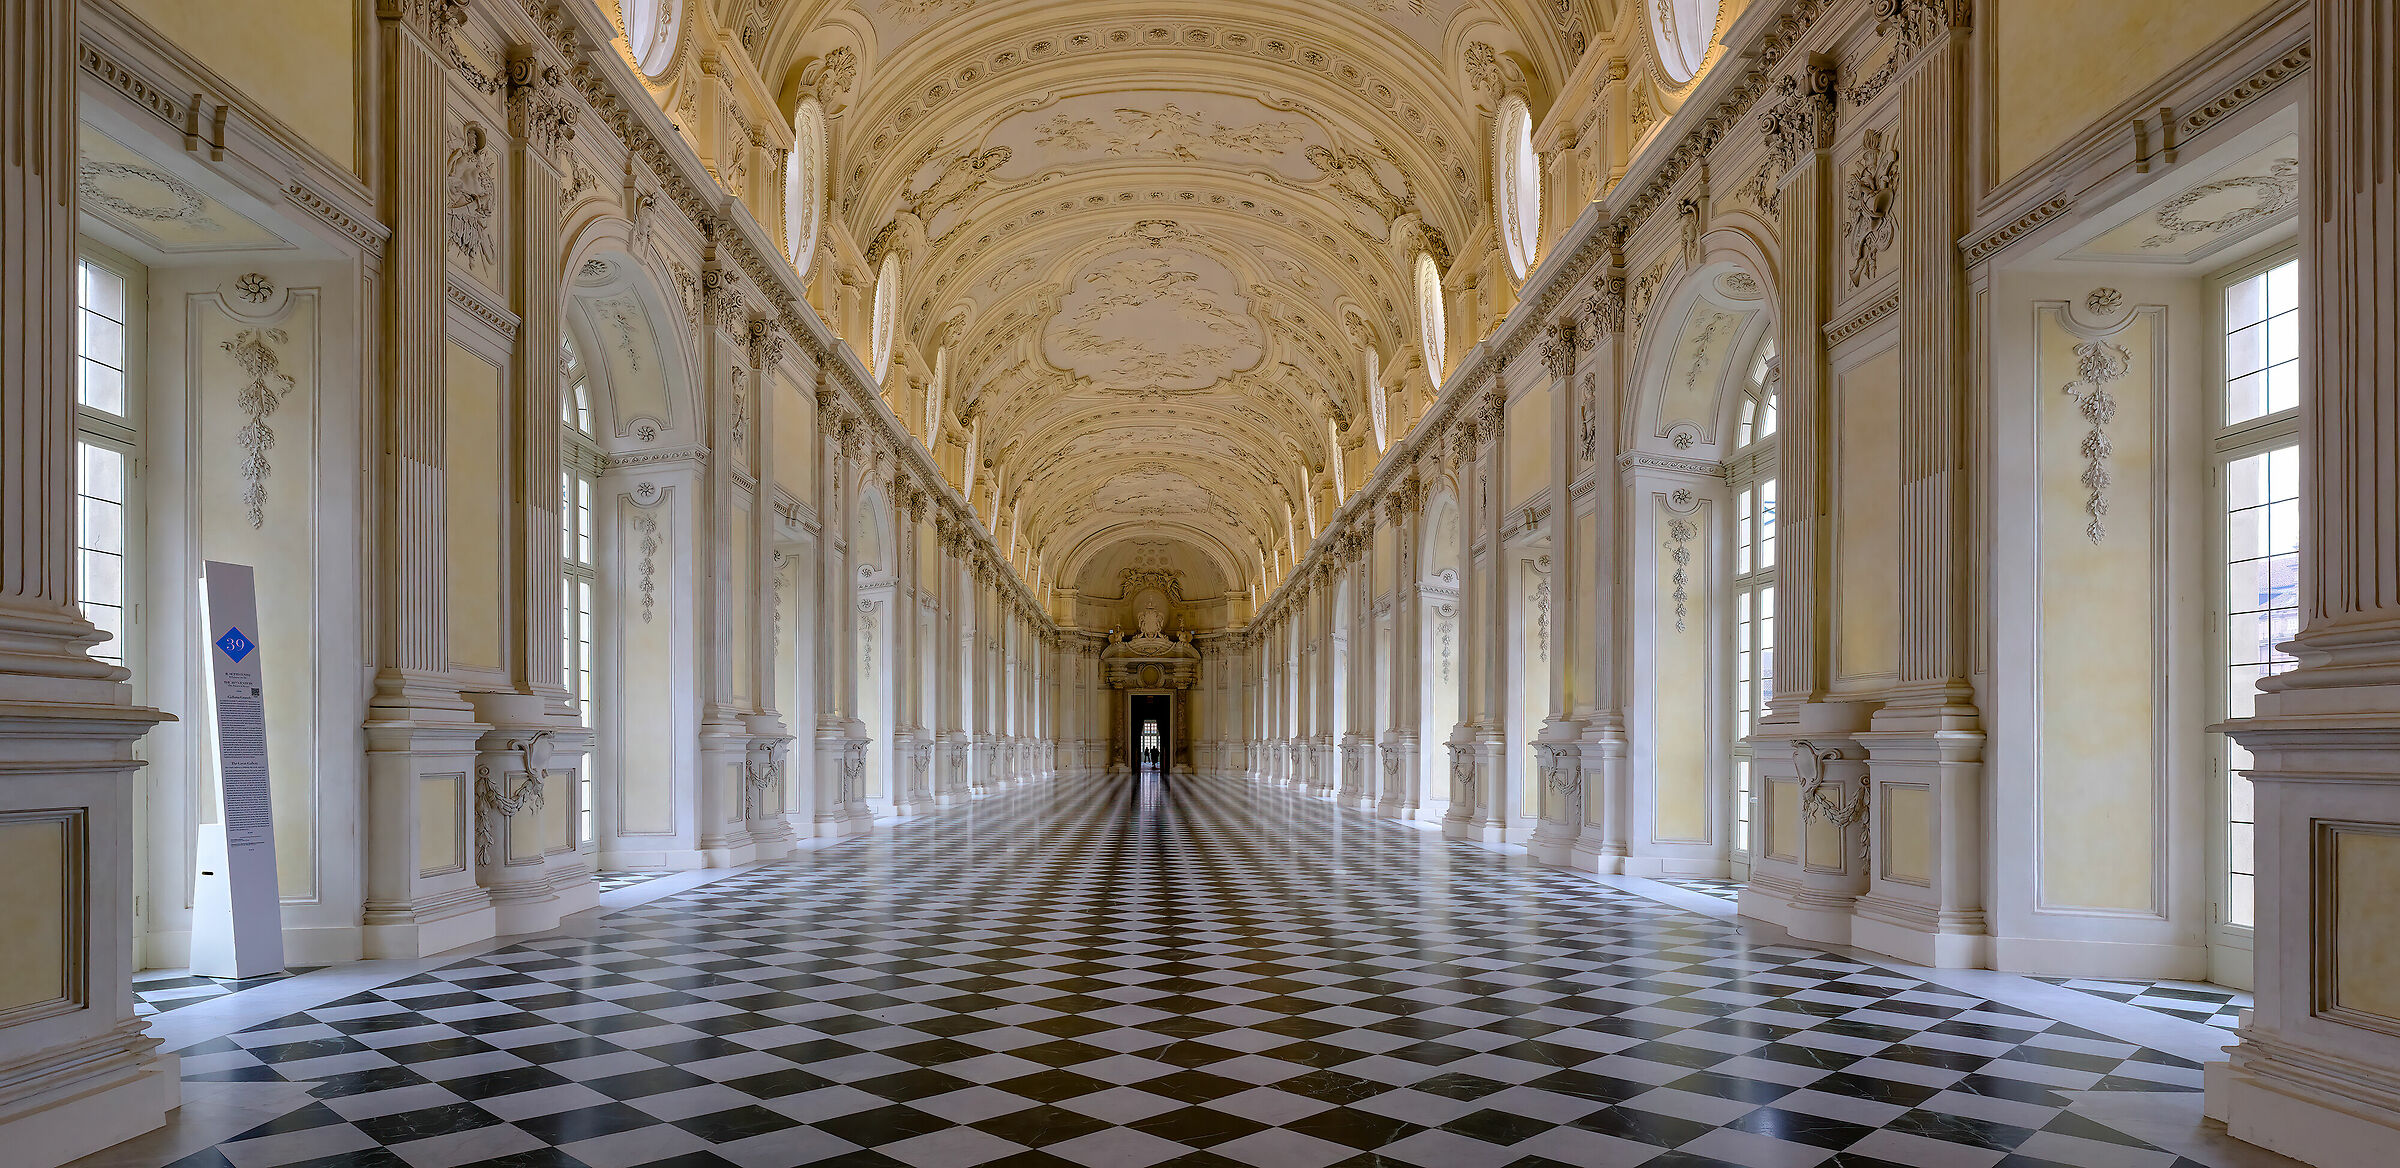 The Great Gallery - Reggia di Venaria Reale...